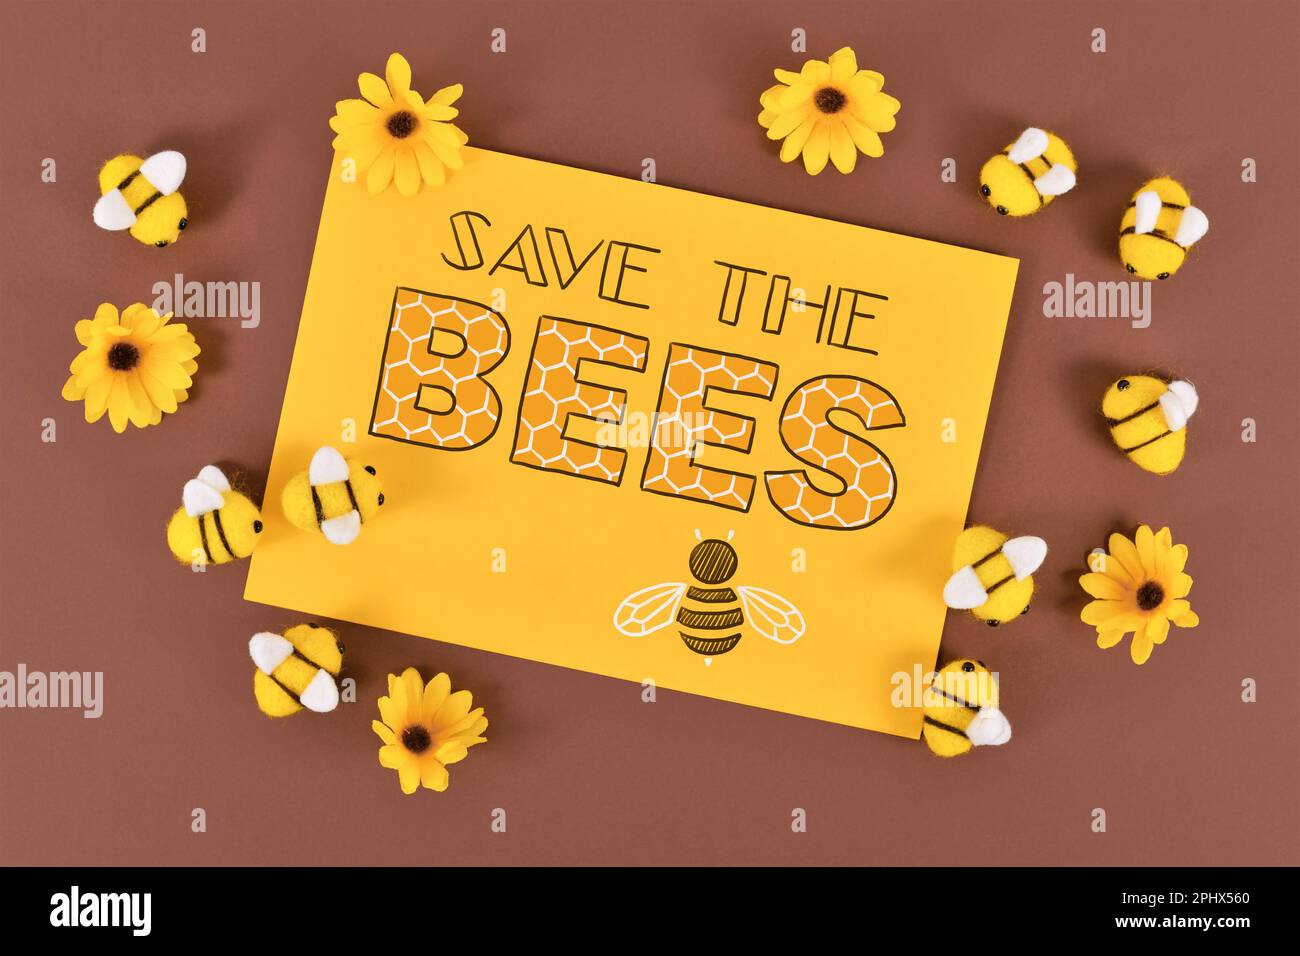 Enregistrez le panneau des abeilles entouré d'abeilles feutres et de fleurs jaunes Banque D'Images